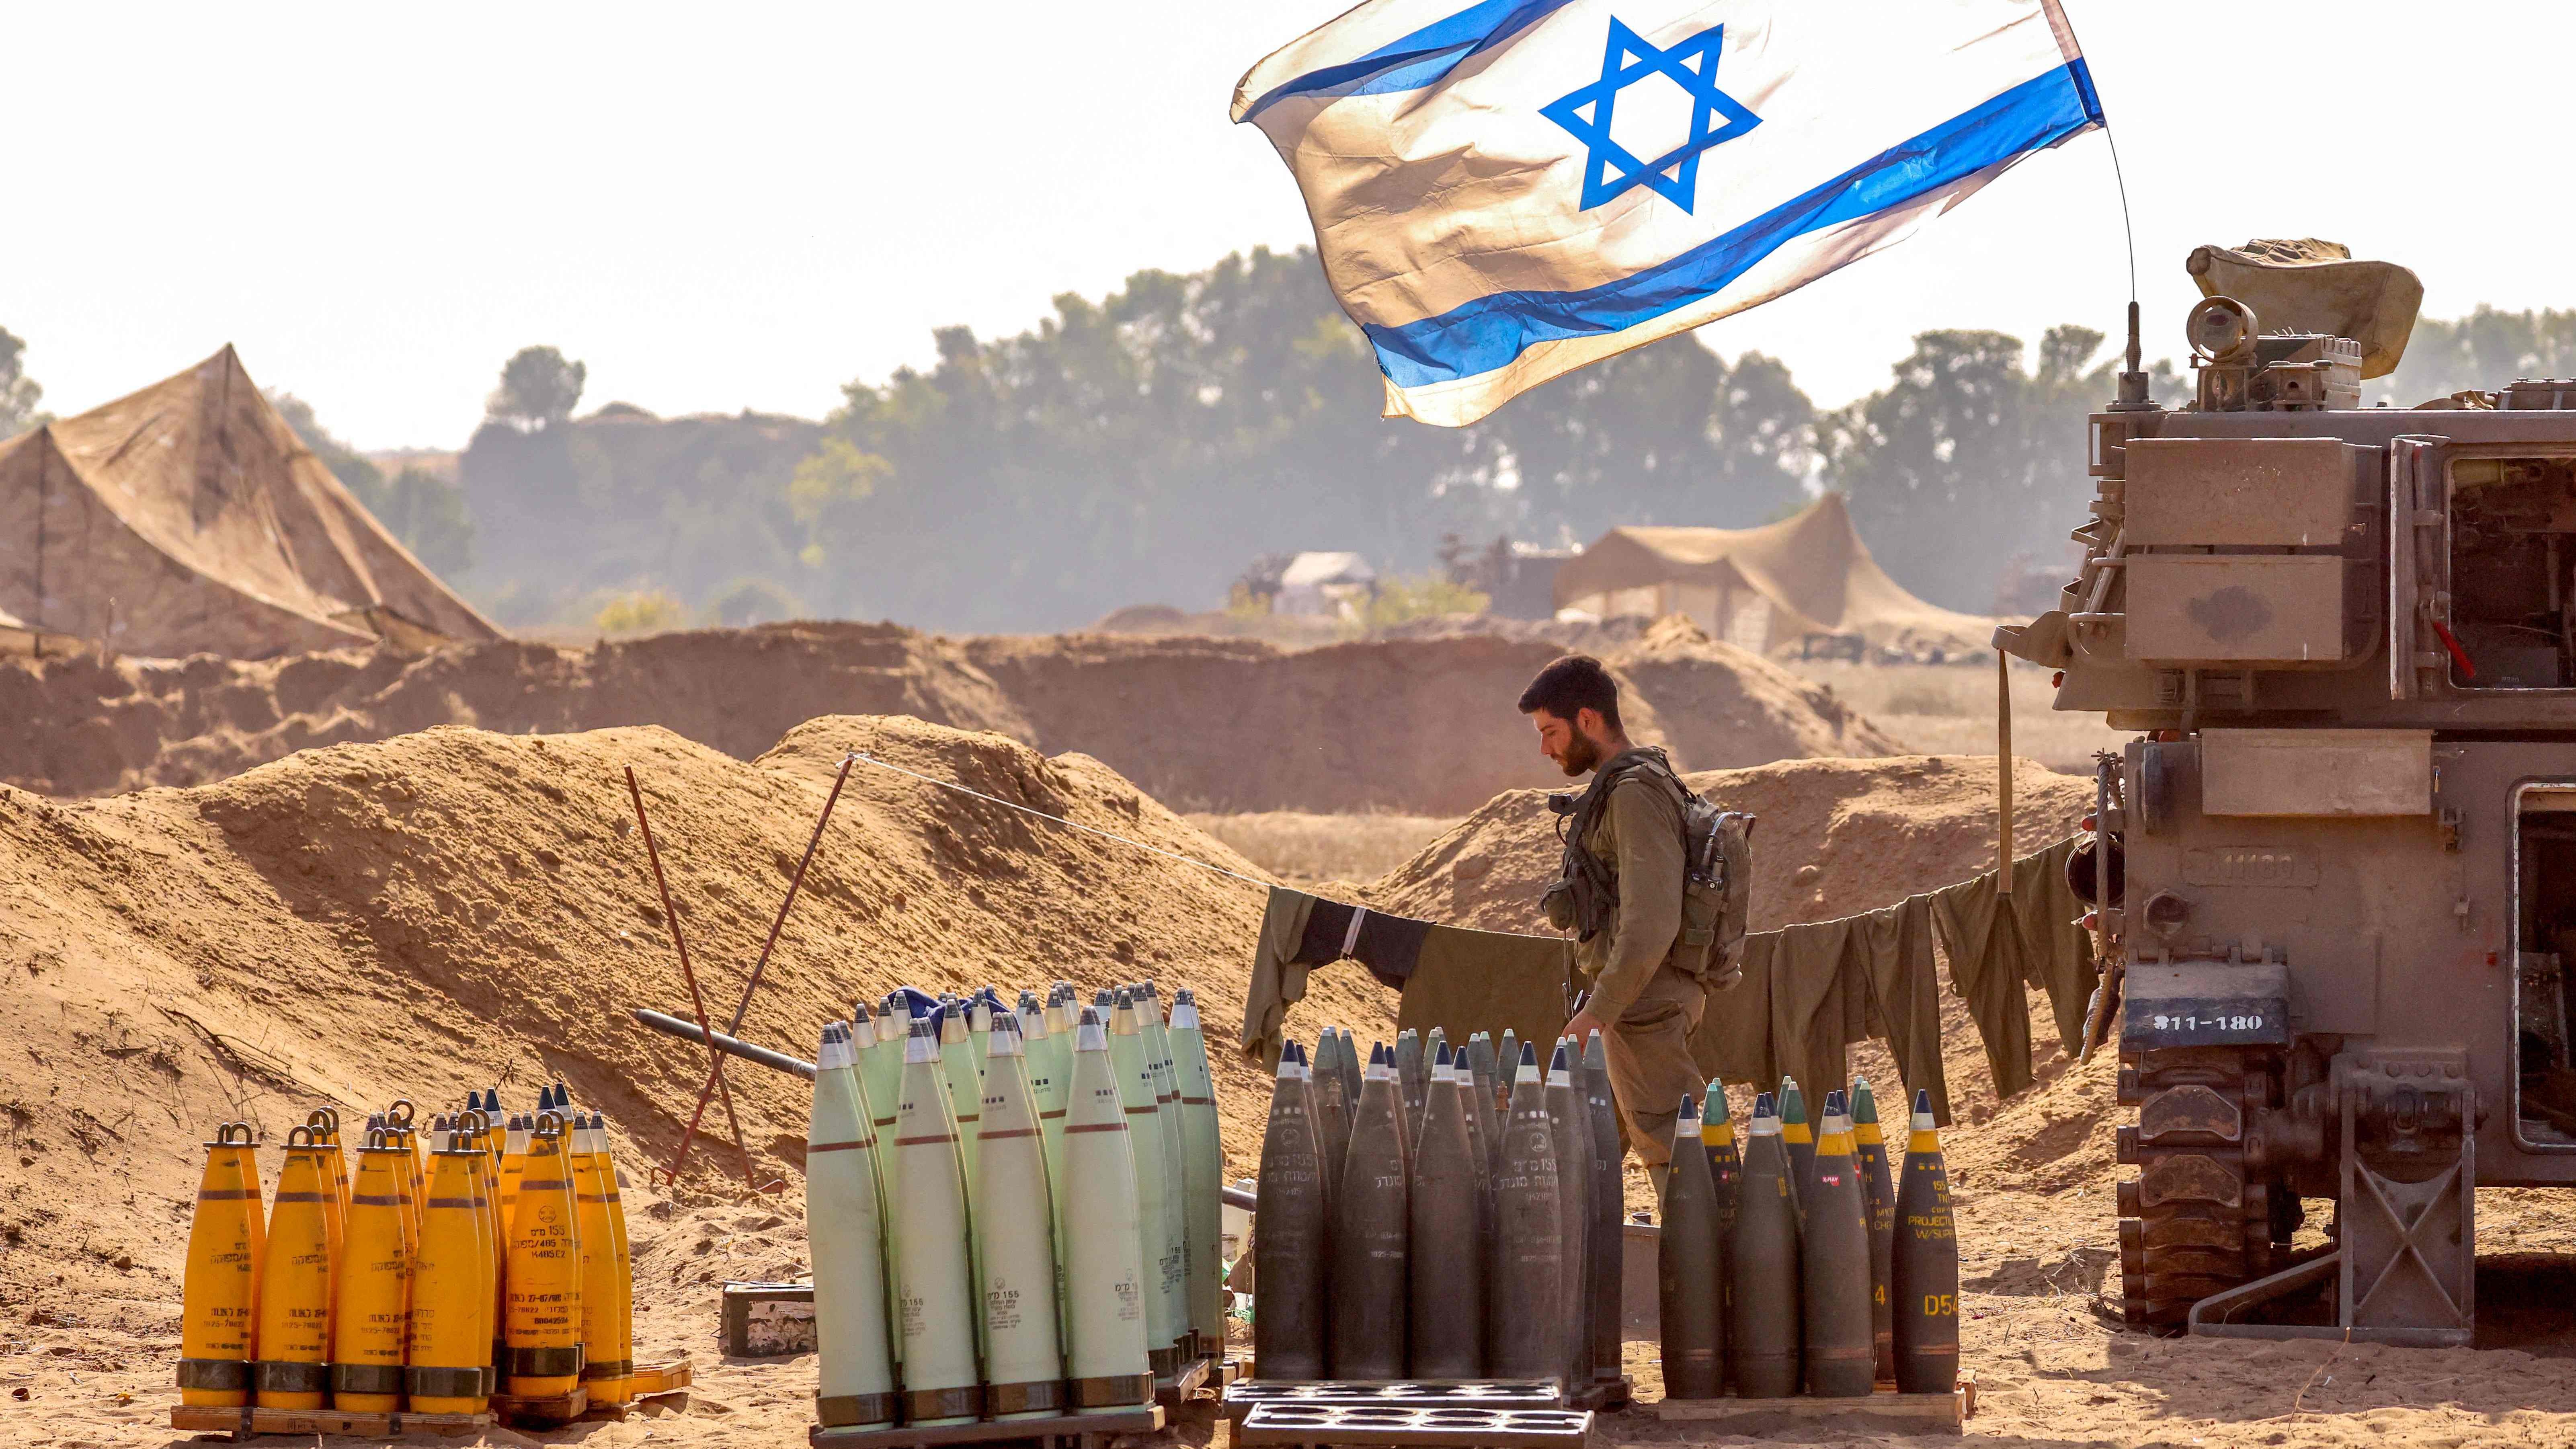 جندي إسرائيلي أمام عتاد وقذائف أميركية يحضرها لاستخدامها في الحرب في غزة